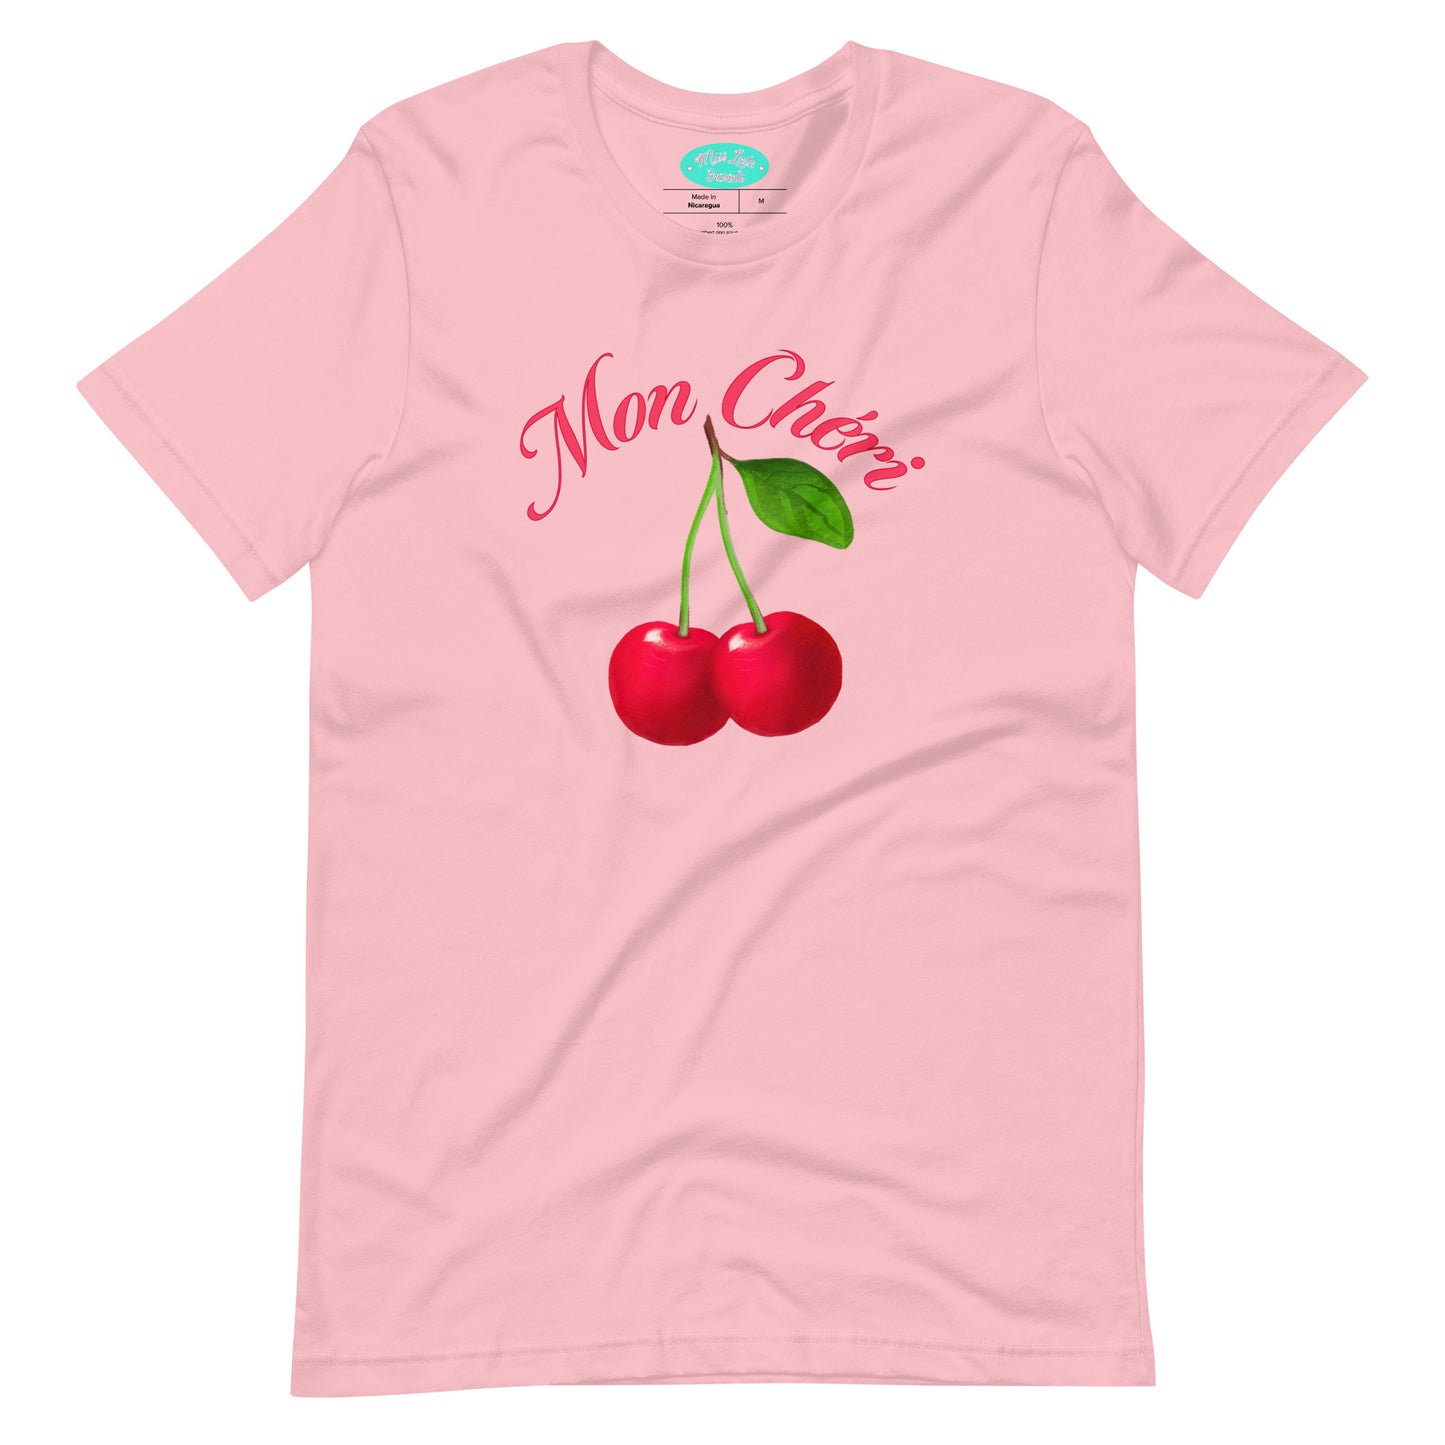 Mon Cherie Pink T-Shirt